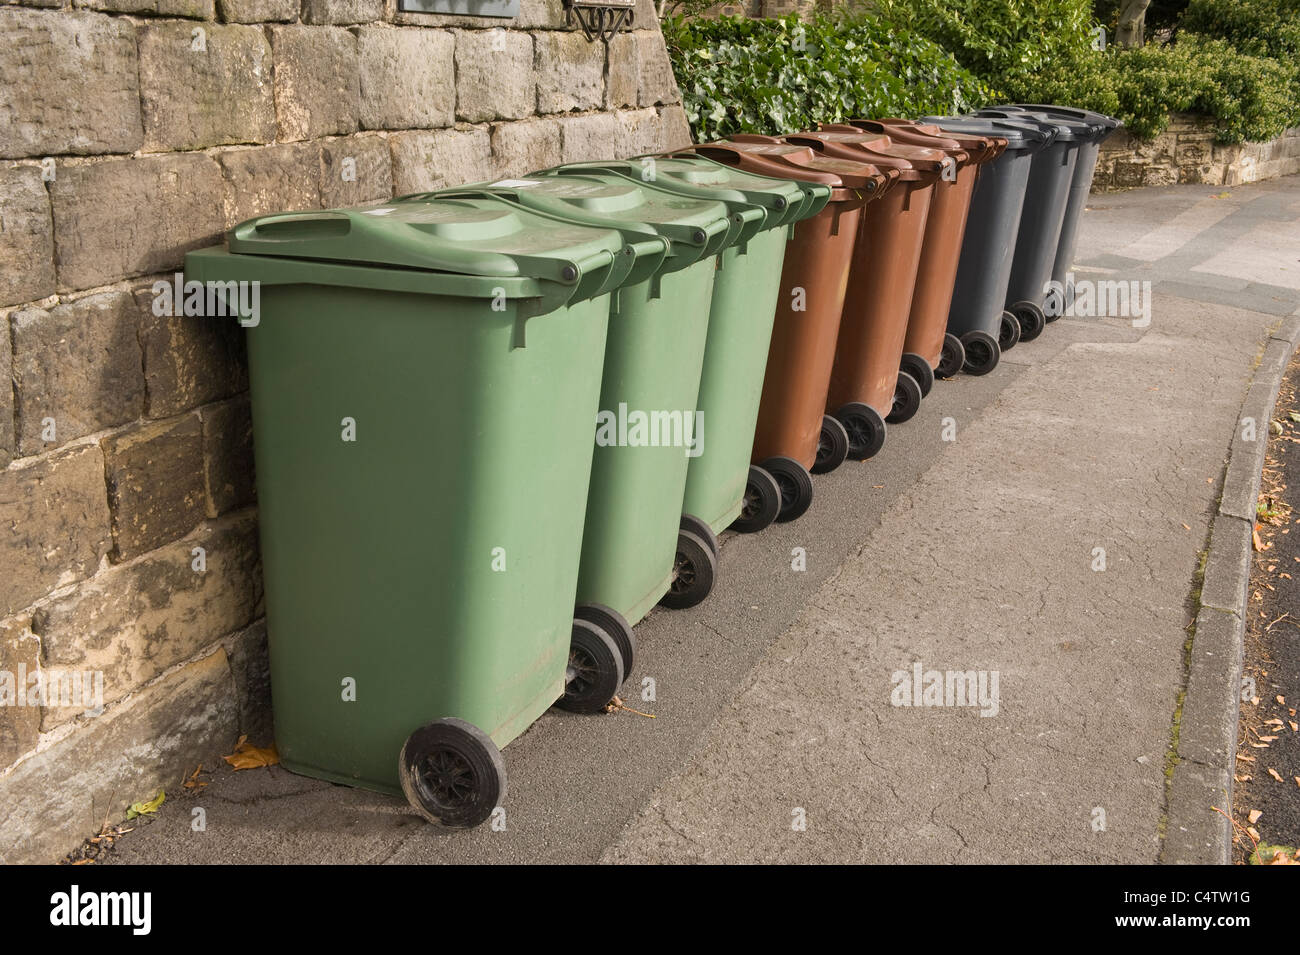 Poubelles à roulettes (gris brun vert) pour déchets domestiques, recyclage et déchets de jardin alignées sur la chaussée pour la collecte - Leeds, Yorkshire, Angleterre, Royaume-Uni. Banque D'Images